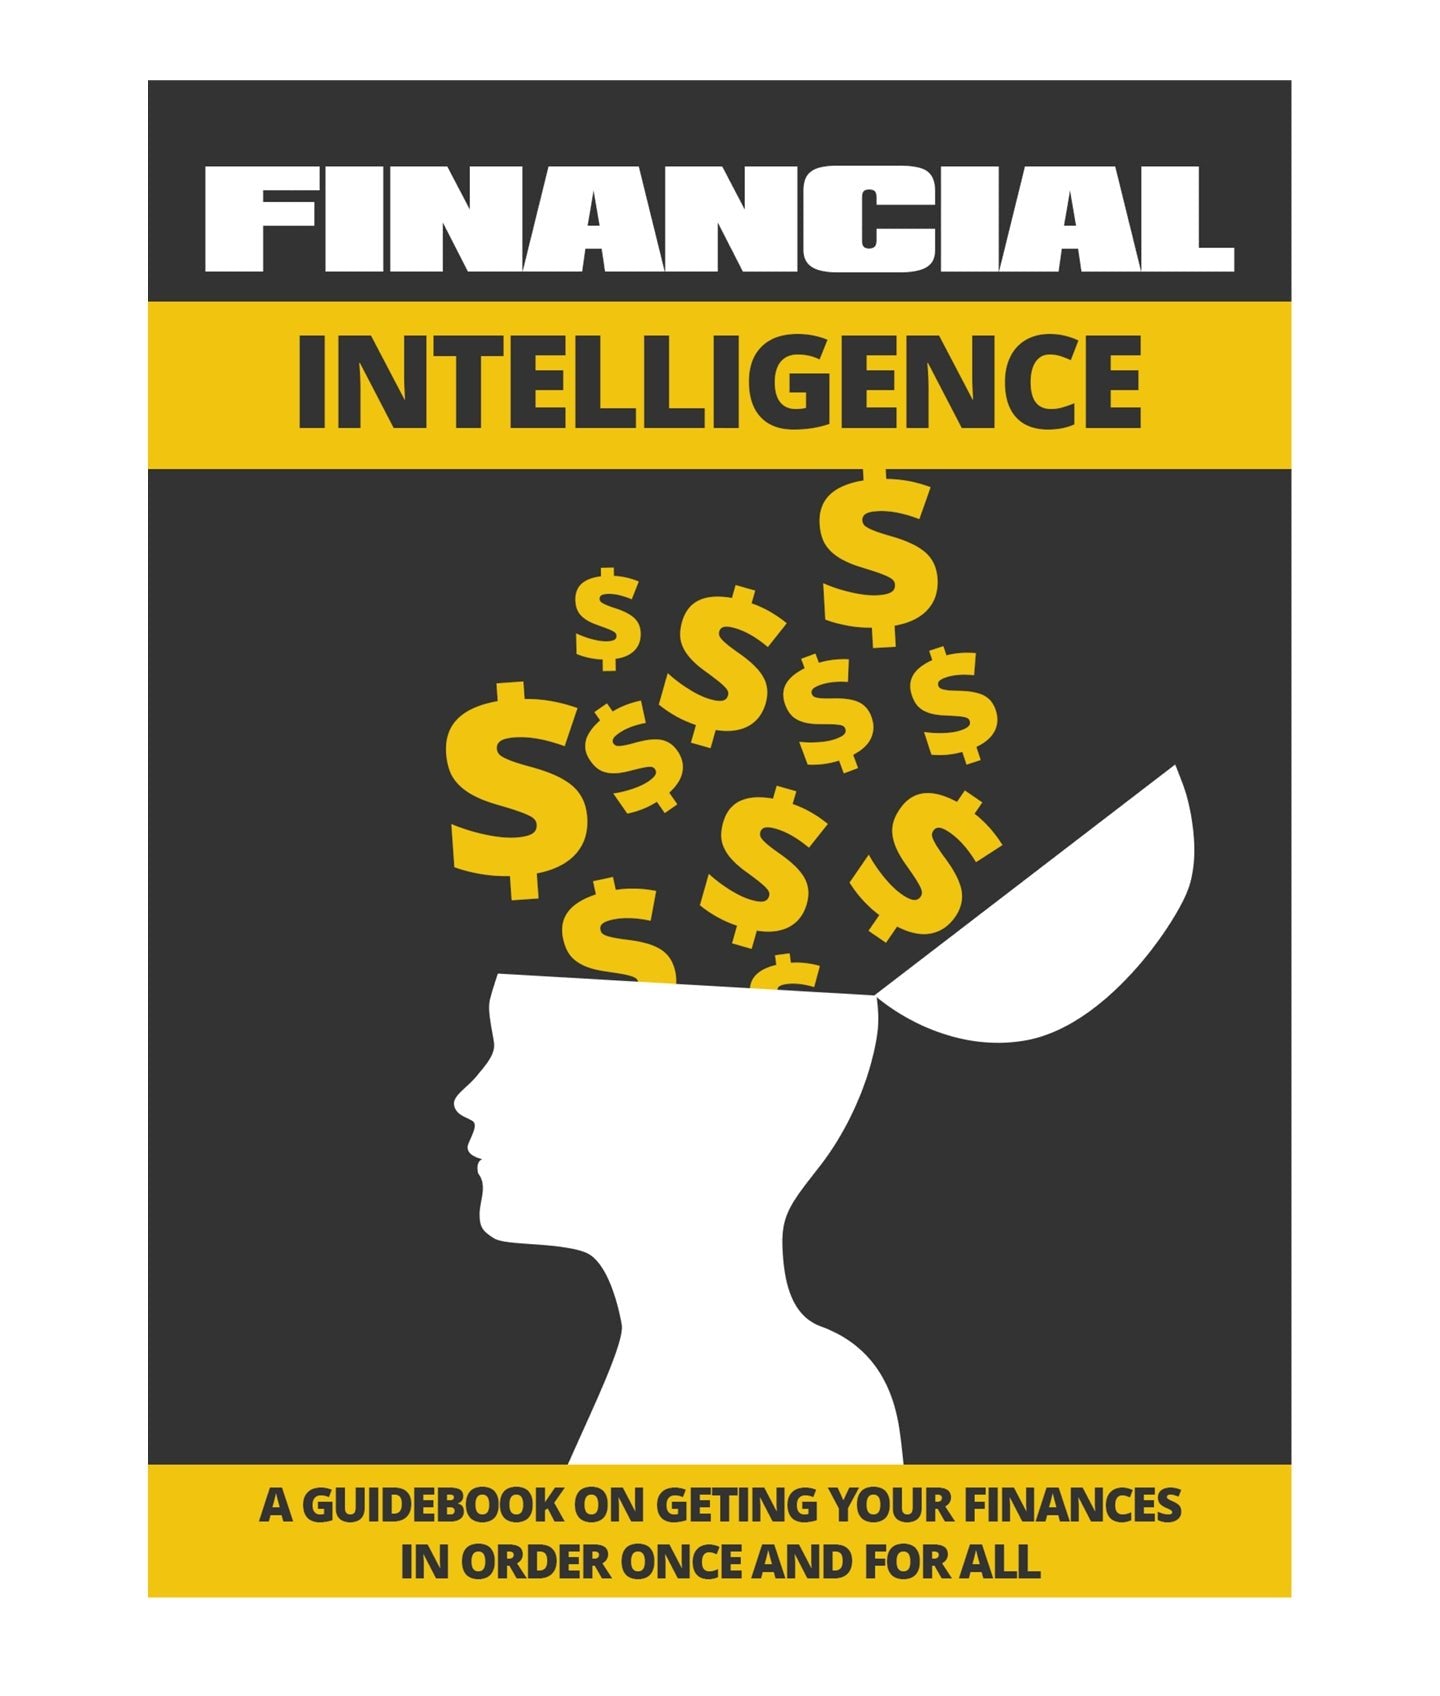 E-Financial Intelligence - eBook - English - Ashoof